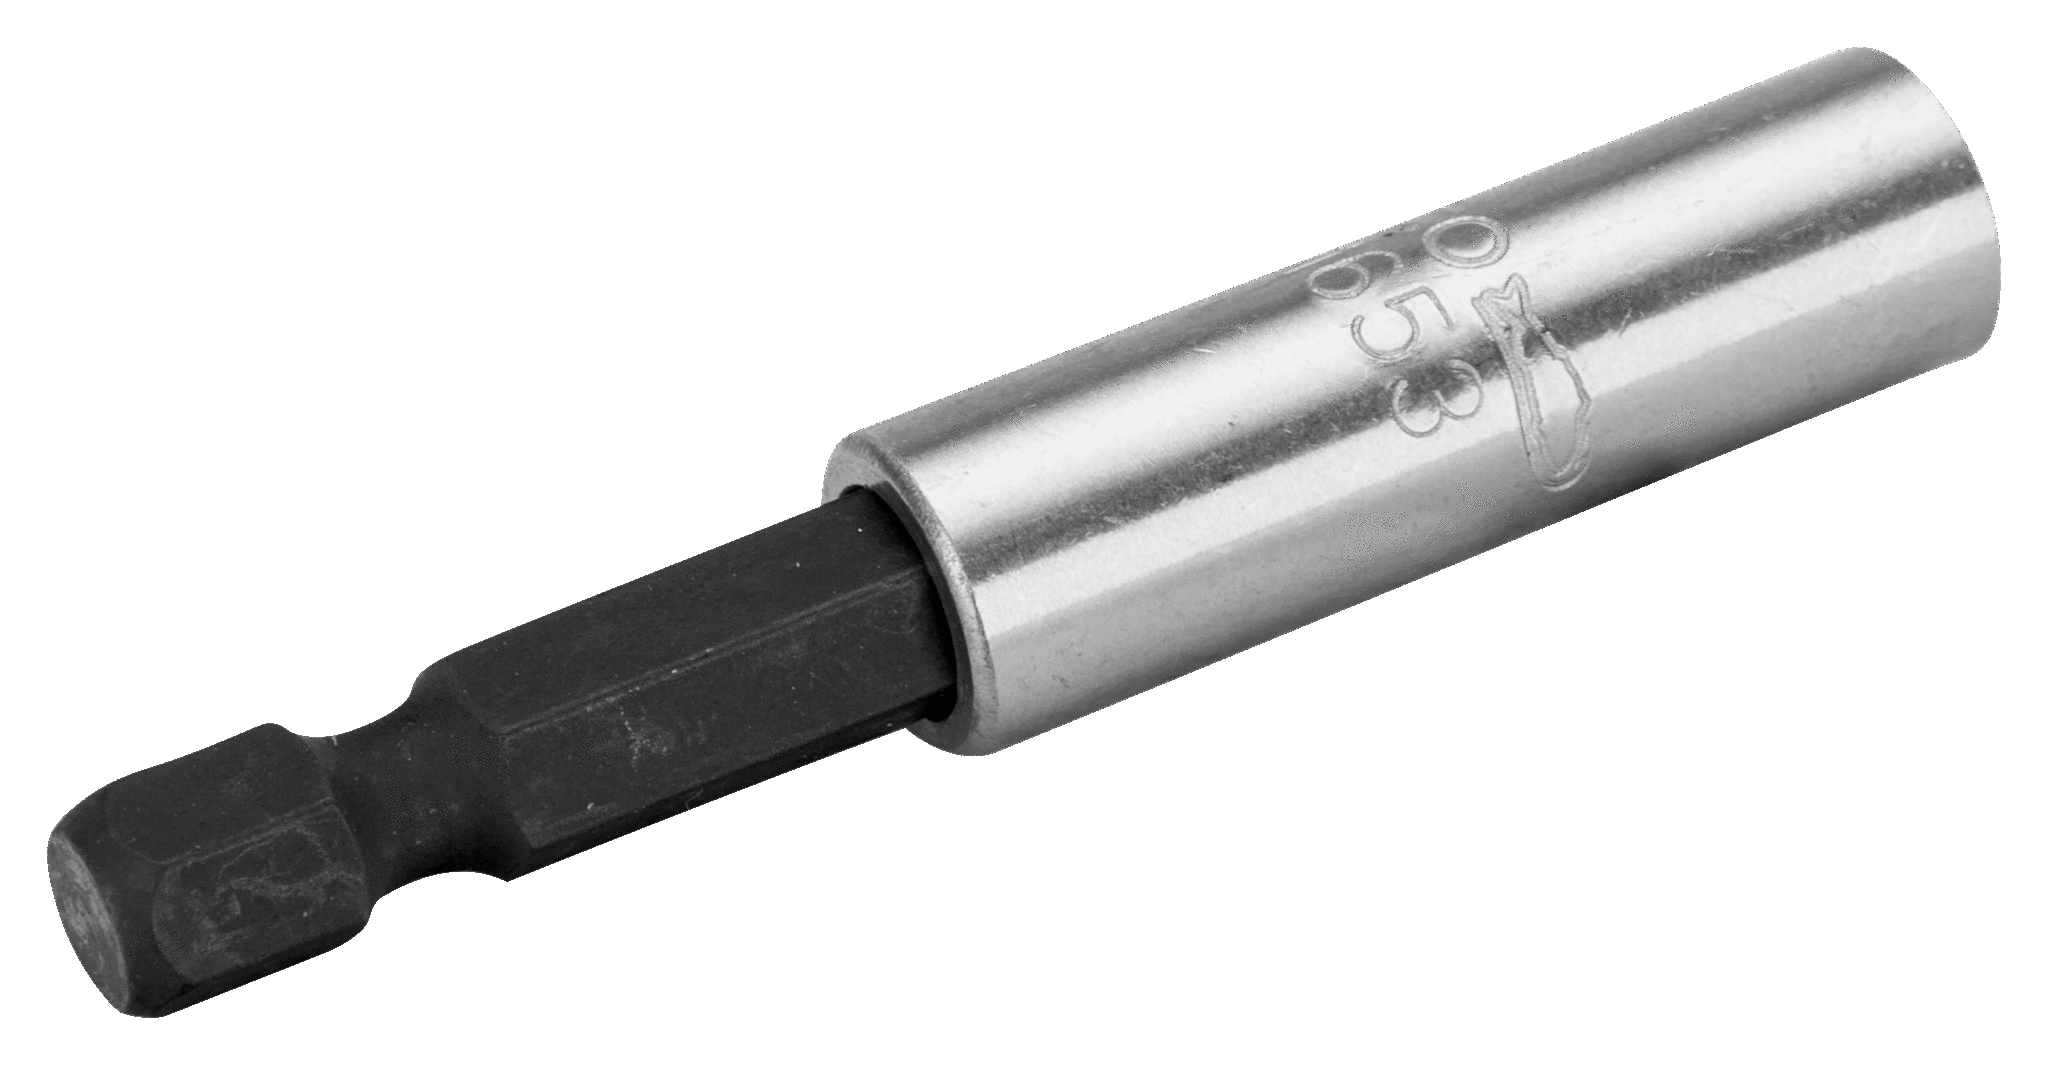 Bit Holder TOPINCN 1/4 inch Hex Shank Magnetic Extension Bar Herramientas eléctricas para taladro eléctrico Longitud del destornillador 60 mm 